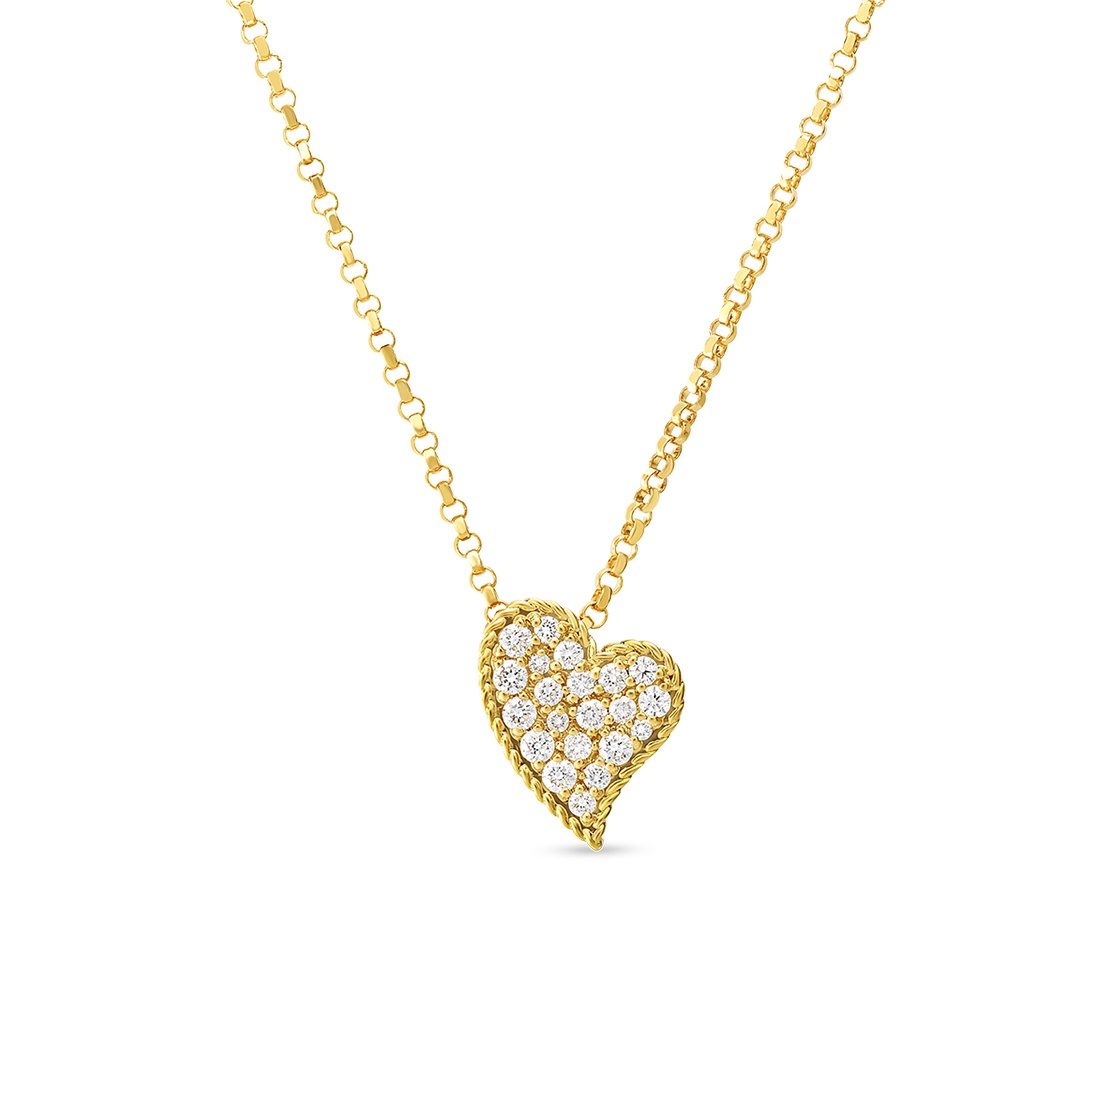 Roberto Coin 18k Yellow Gold & Diamond Heart Pendant Necklace 0